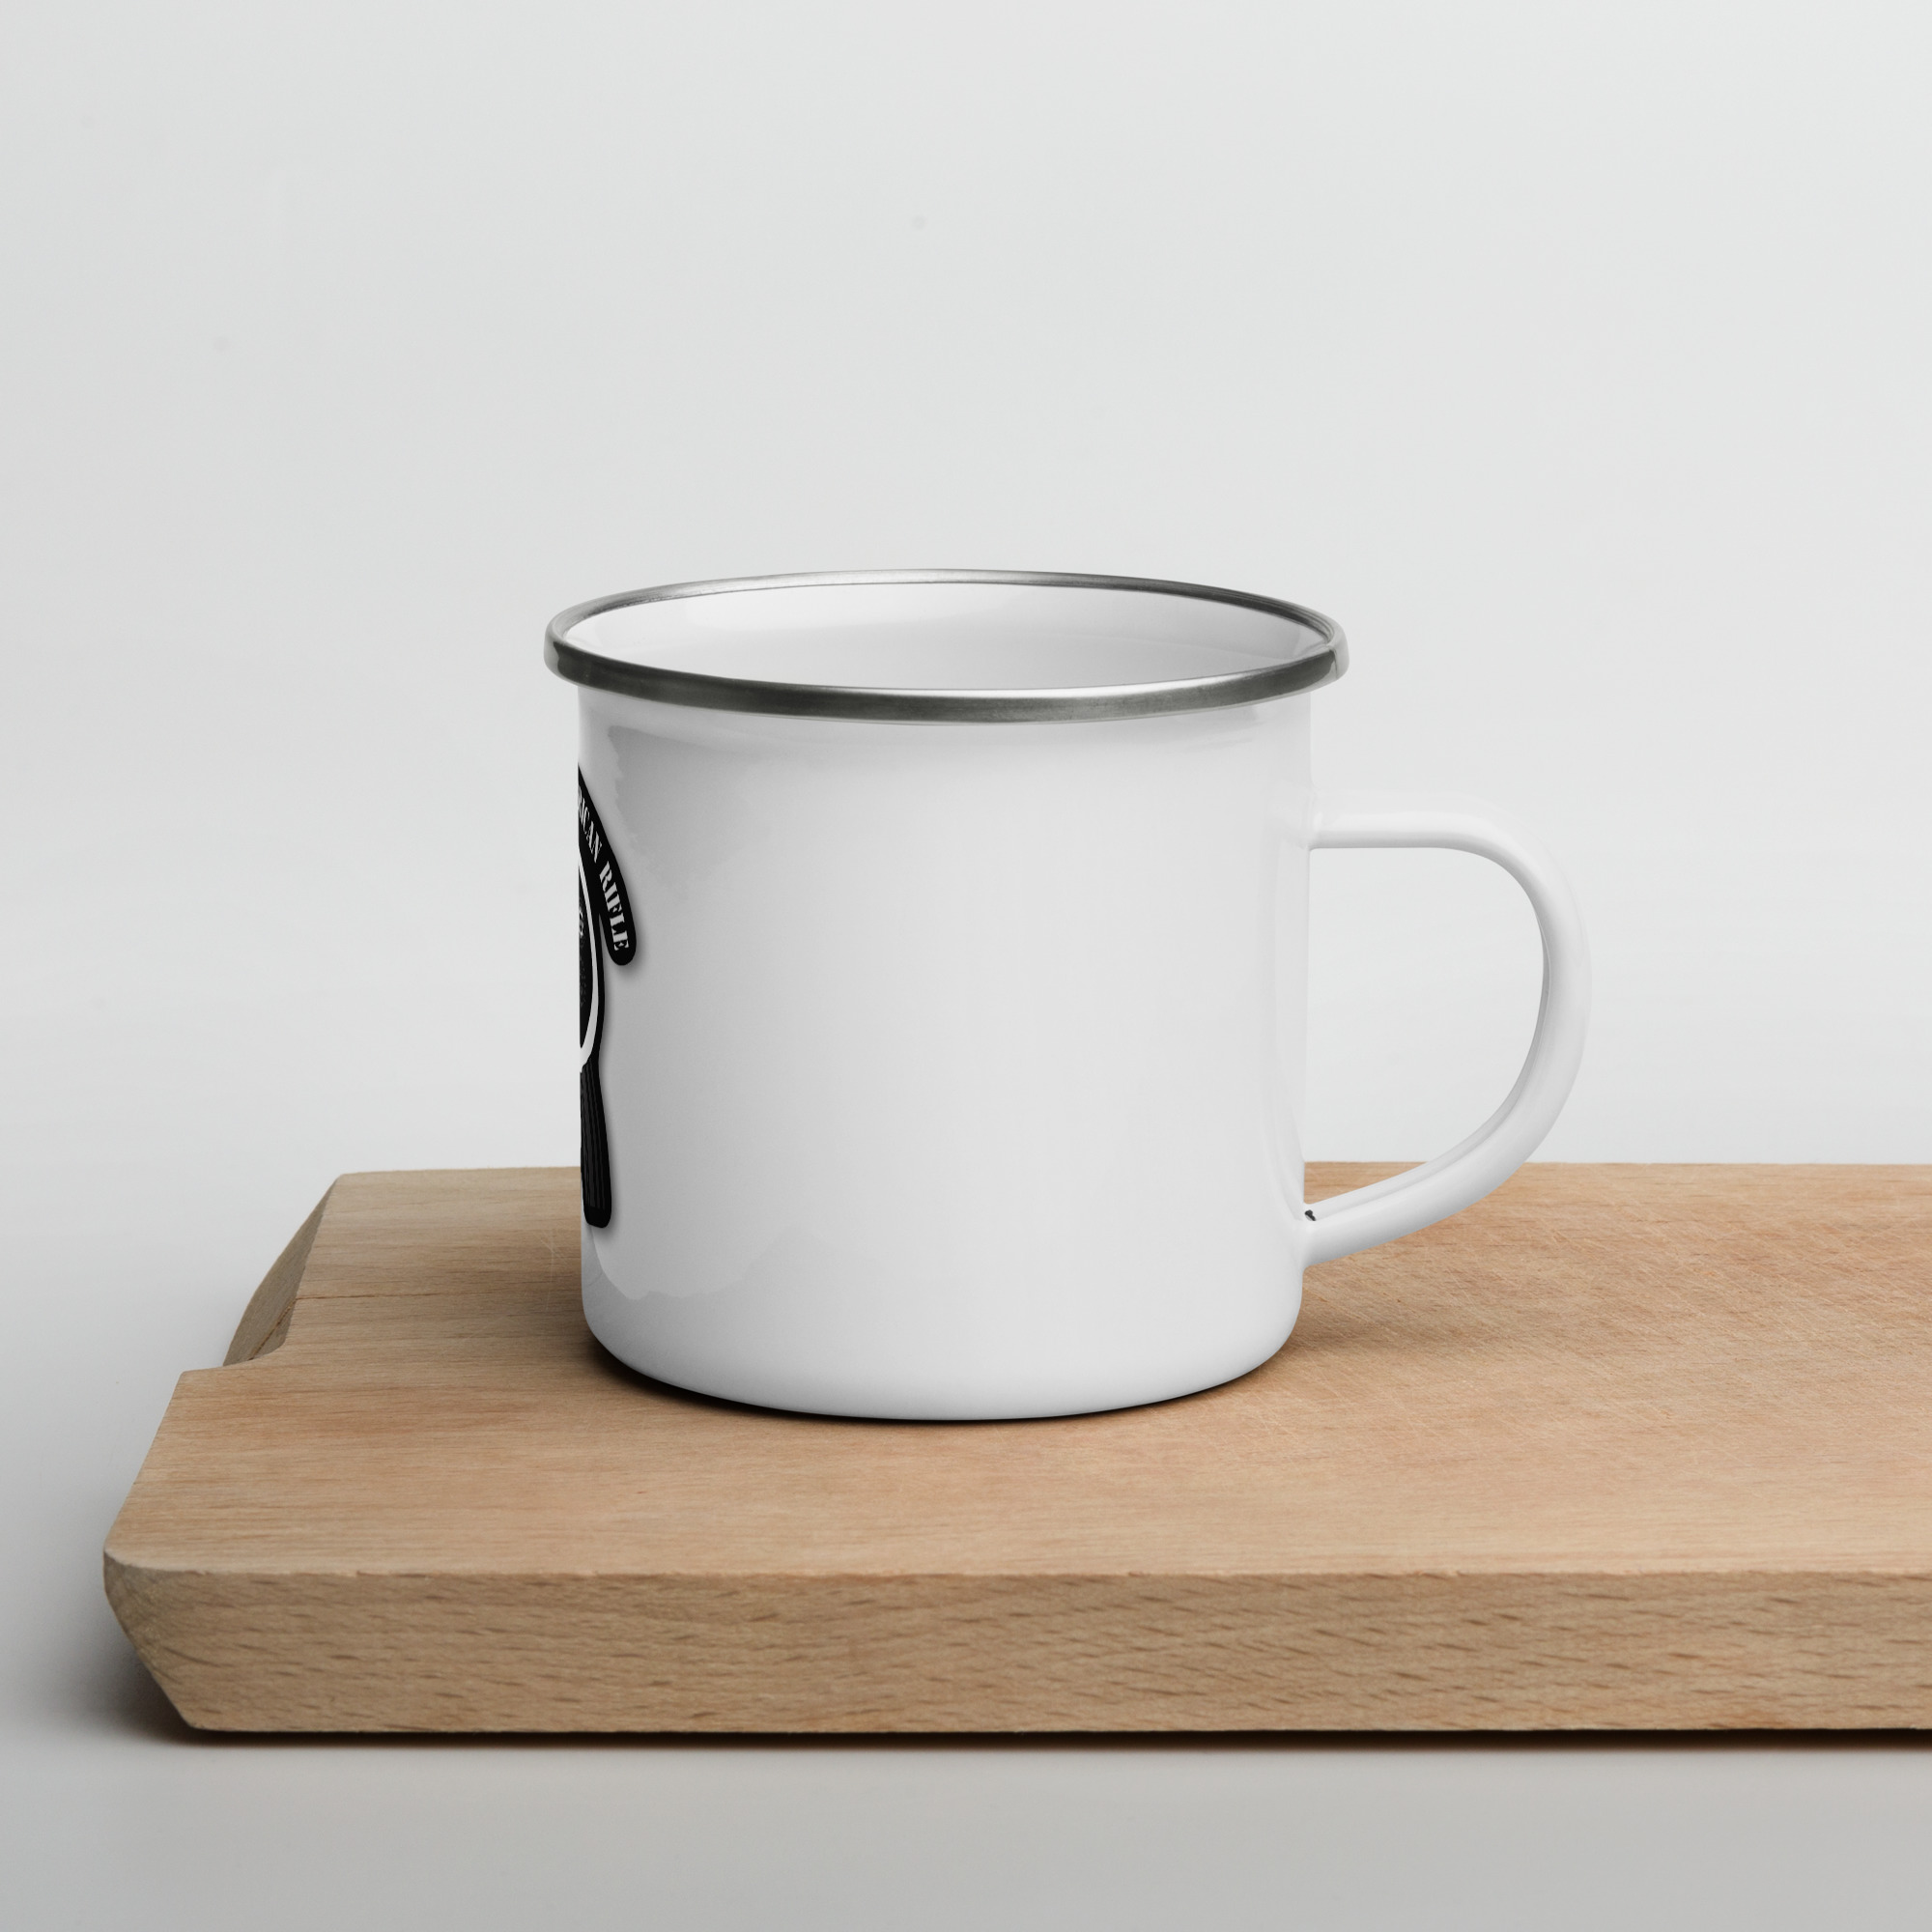 A SOTAR enamel mug sitting on a cutting board.